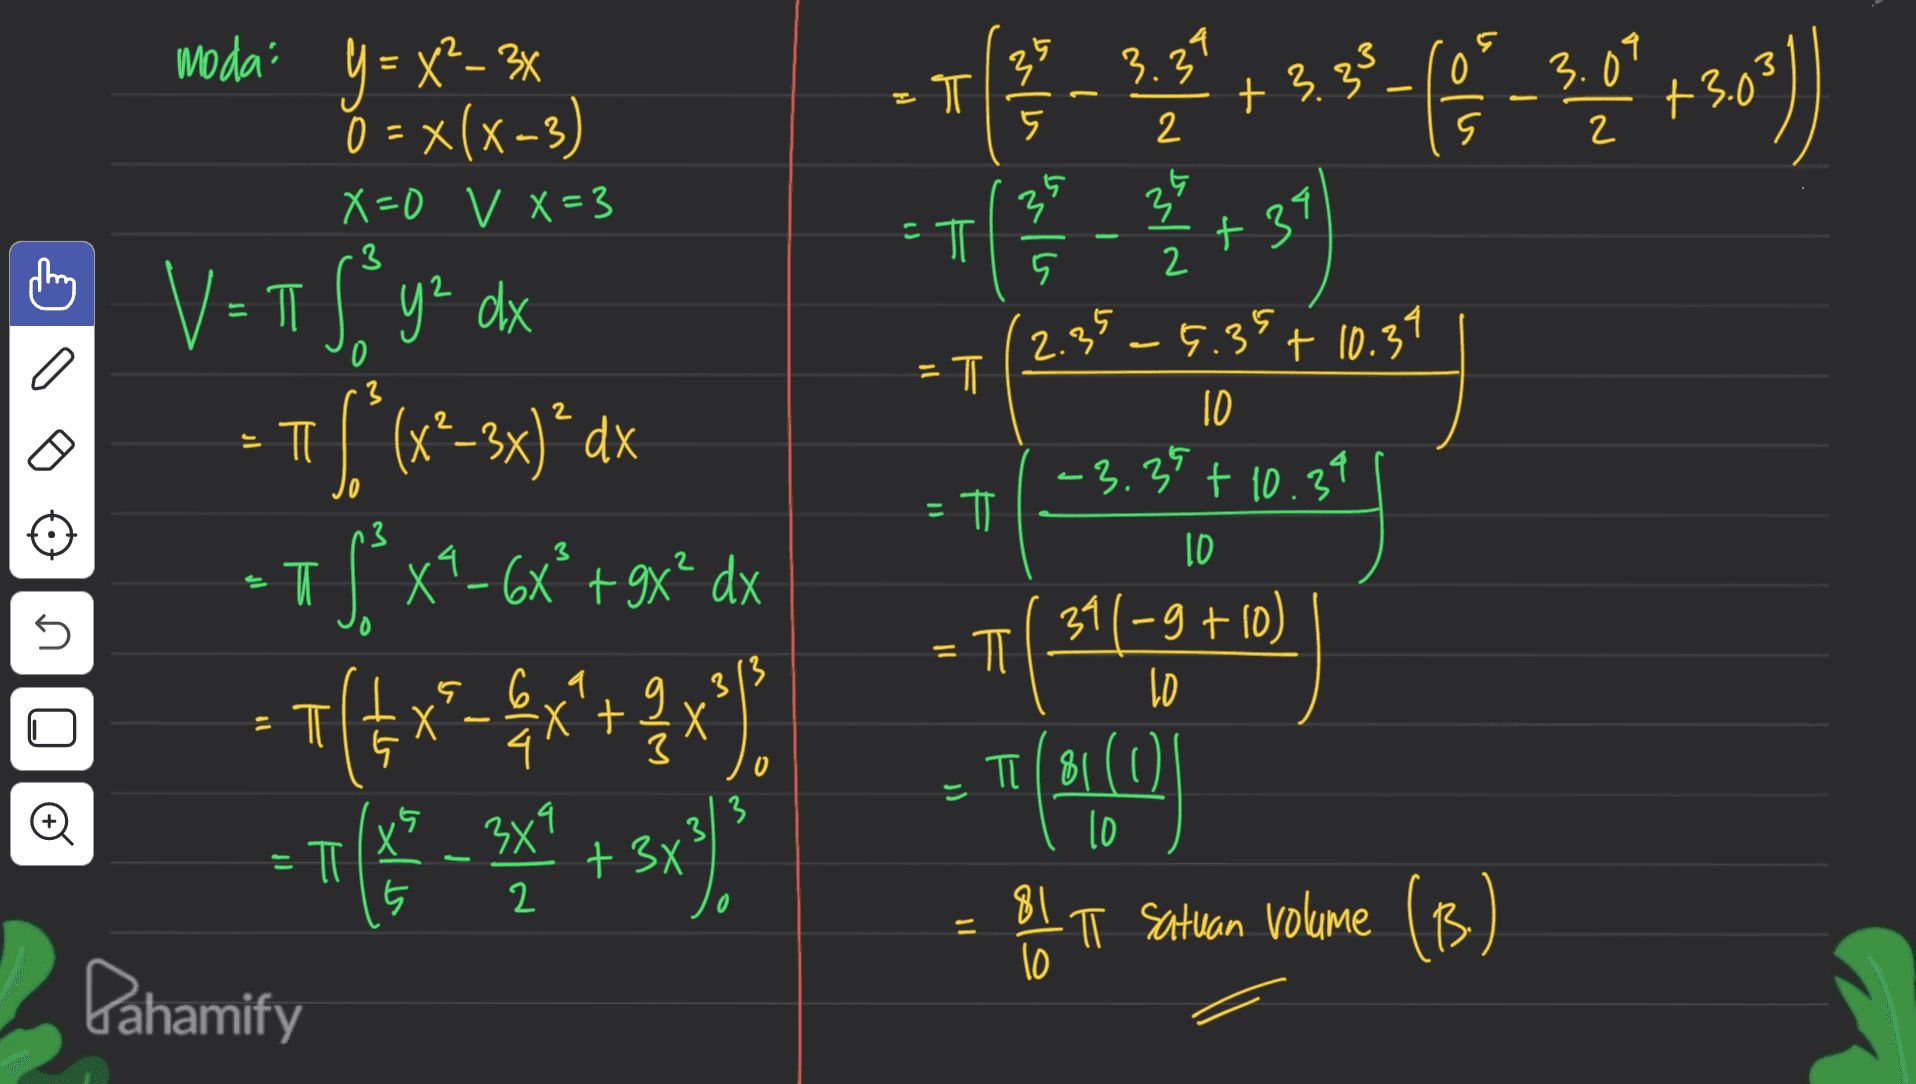 0 moda y = x²-3x o = x(x-3) 3 - 18 PA33-9-7-56) 3.33 T 3.09 +3.0 5 2 2 X=0 v X=3 3 39 35 -T ㅠ +34 5 2 2.3 35 -6.39 + 10.34 . 0 3 =T F 1059] 2 2 10 Б TI -3.35 + 10.39 Ő V=TT Sy dx y² $ (x* 2-3x)*dx S. x9-6x*+9x* dx 7(x-4x+3x). [ = F n3 3 ID -T U ) = F ㅠ 13 3 - 6,9 X 2 3 0 _8 (311-9 +10) TAO I satuan volume (B) TI (81(0 j) 3 13 10 는 = π X 5 х75х1 2 + 3x - 81 10 T Pahamify 